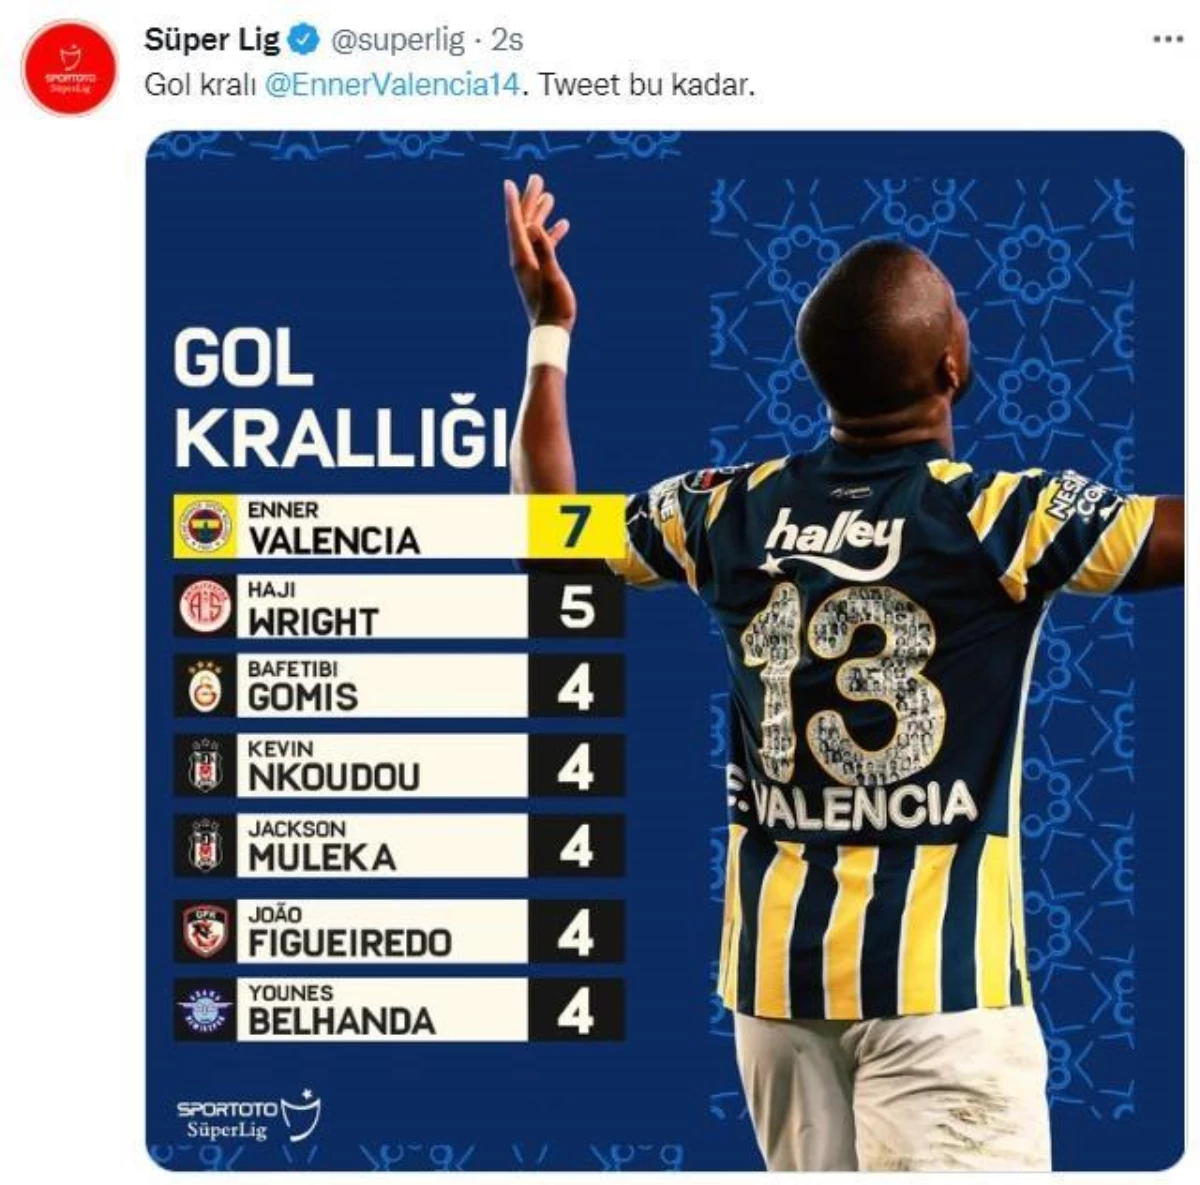 Süper Lig resmi hesabının Fenerbahçe paylaşımı ortalığı karıştırdı! Kullanıcılar takipten çıkmaya başladı